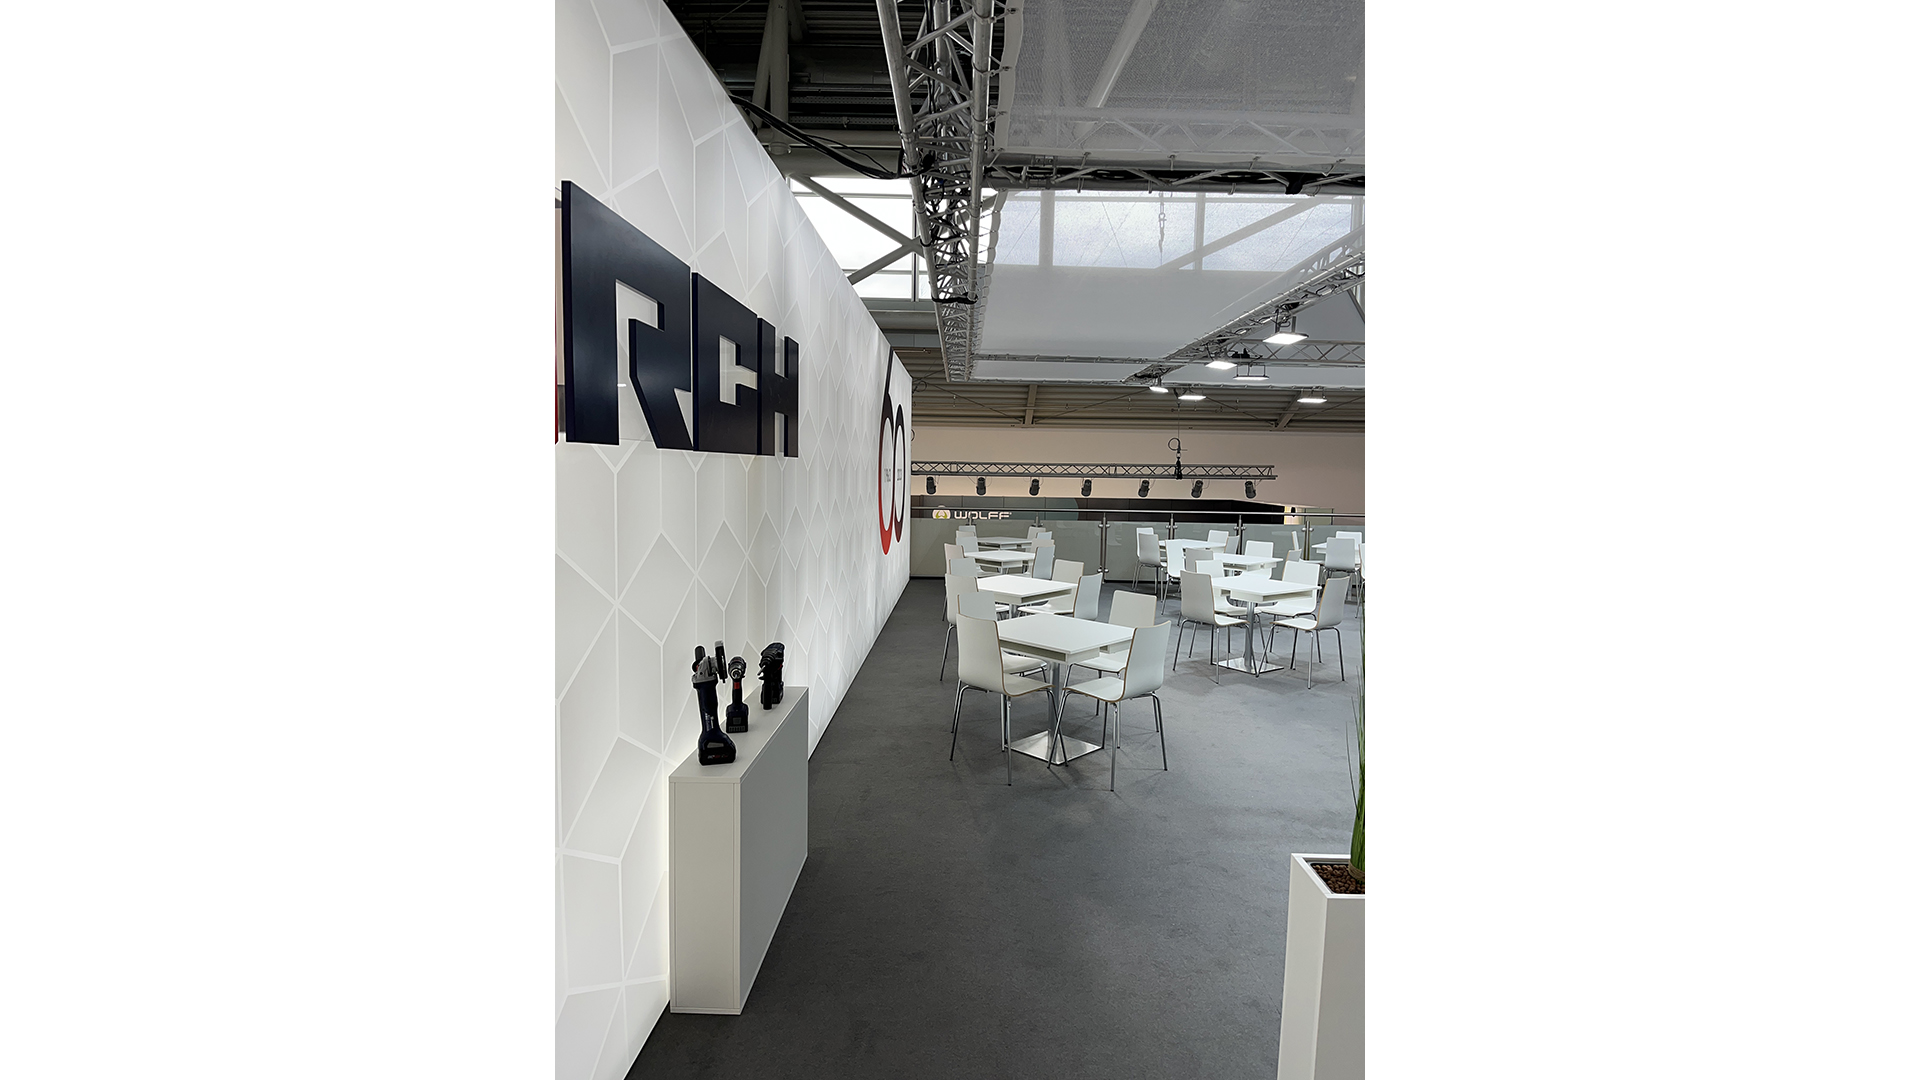 Theo Förch GmbH & Co. KG